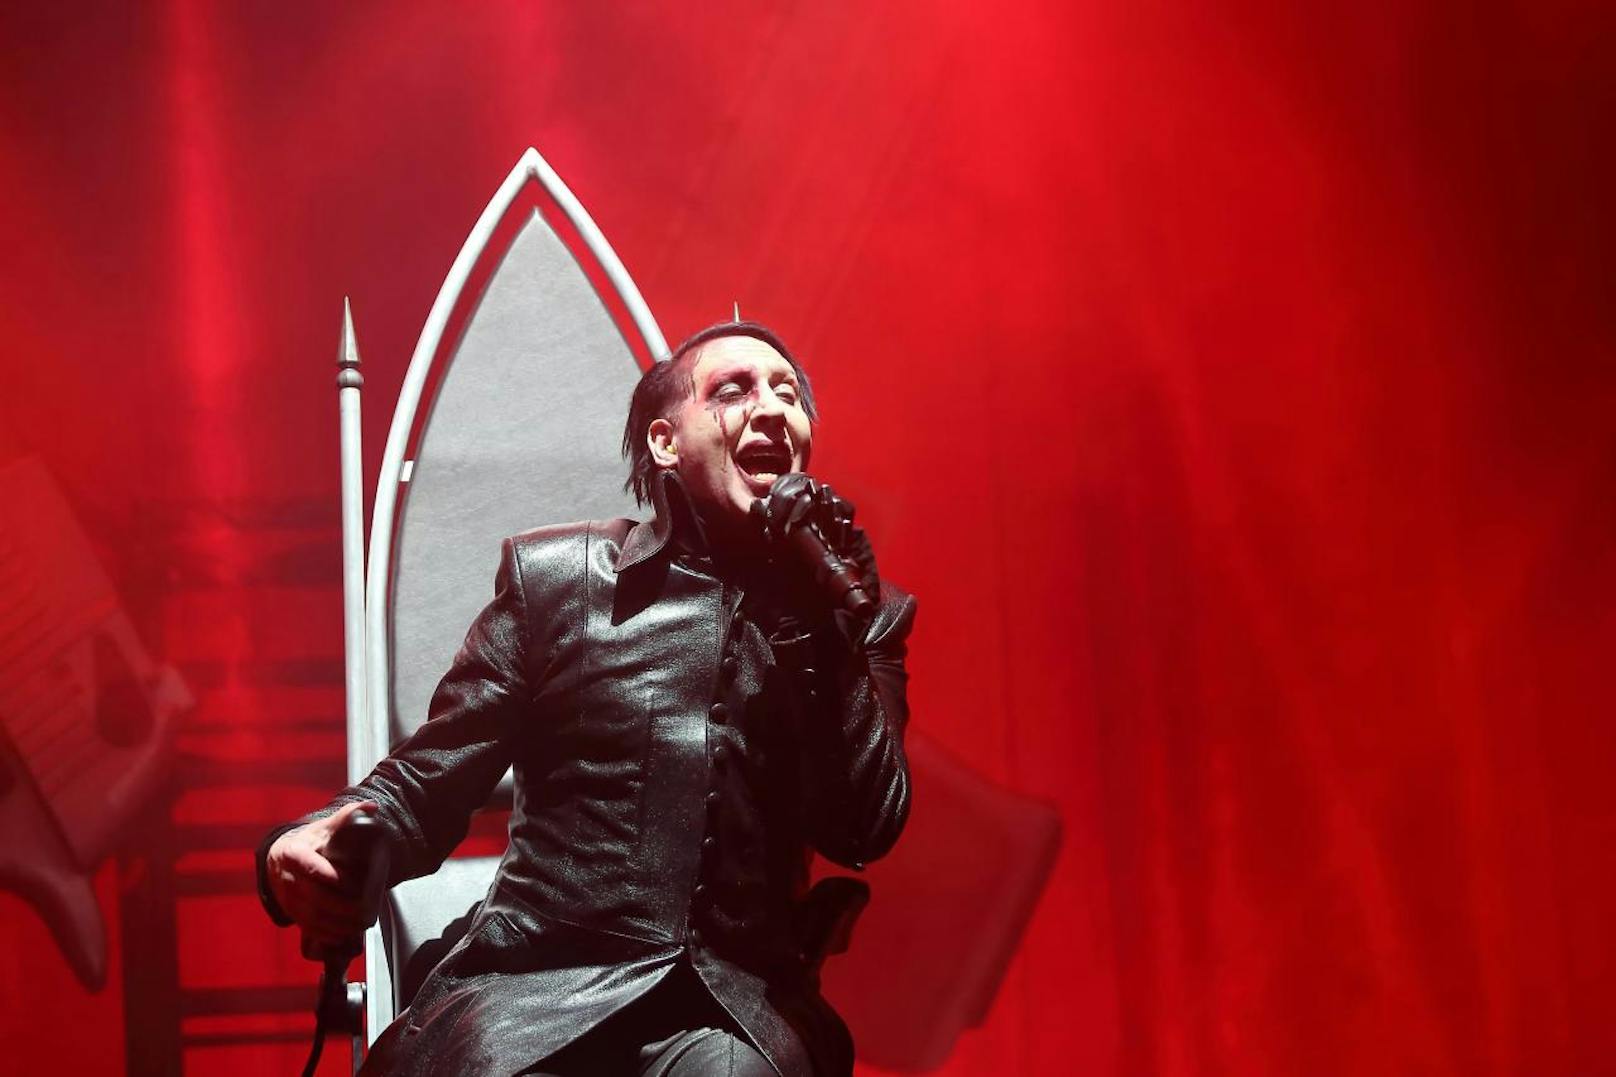 Der amerikanische Musiker und Sänger Marilyn Manson - bürgerlich Brian Warner.